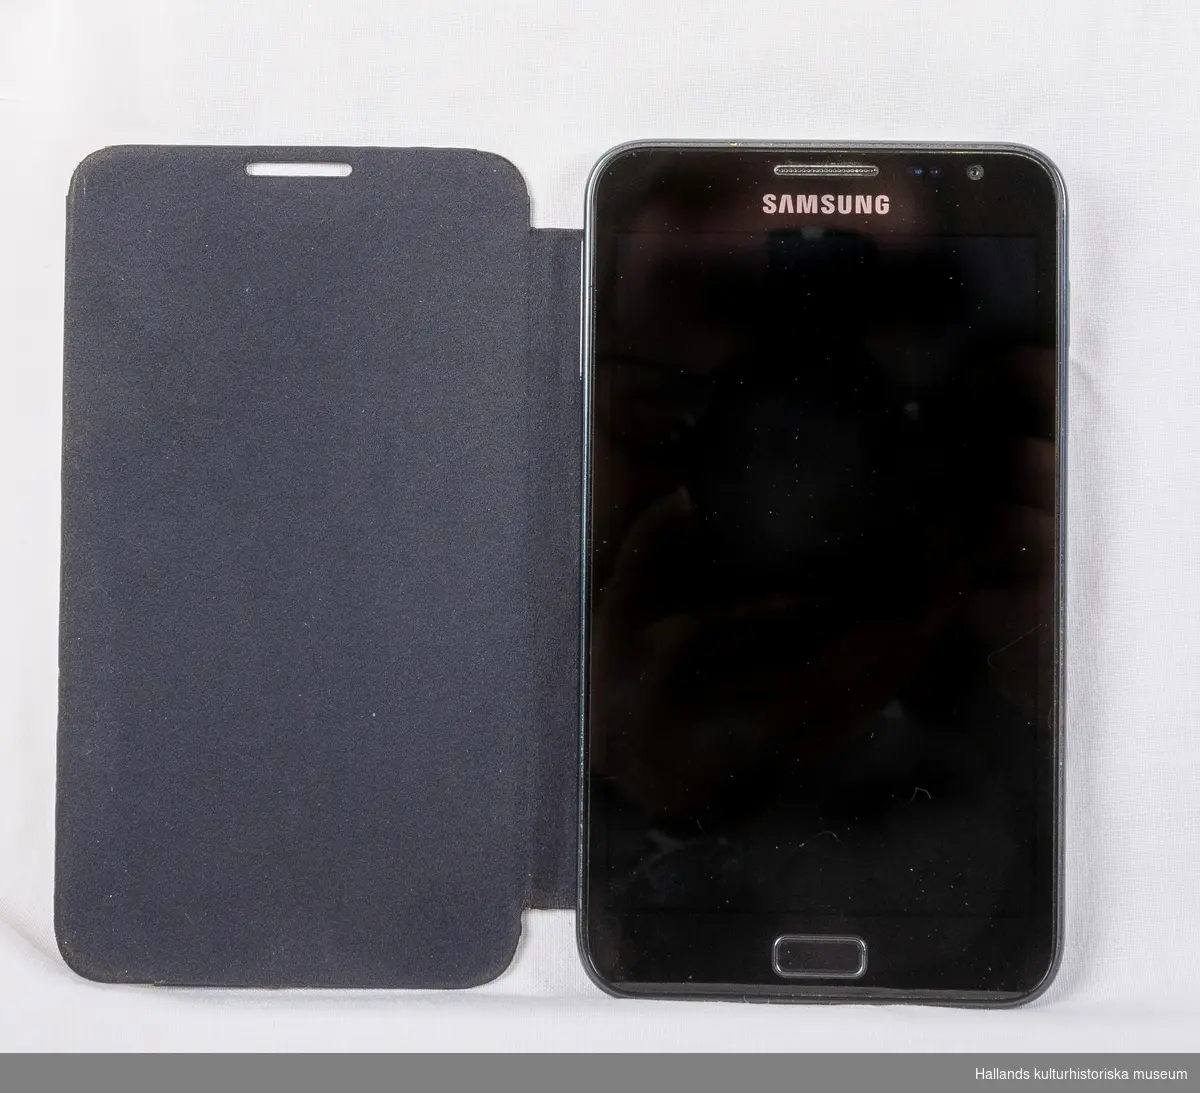 Samsung Galaxy Note (Tillverkare: Samsung, modell: Galaxy Note) med yttre skal av svart hårdplast och metall. Telefonen har ett vikbart fodral av svart konstläder.

På telefonens framsida en digital skärm med sensor för tryck, en tryckknapp, högtalare, kameraoptik, samt en märkning: Samsung. På telefonens baksida kameraoptik, en lysdiod för blixtljus, samt en märkning: Samsung. Baksidan går att knäppa loss för åtkomst av batteri och telefonkort (sim). I telefonen sitter ett simkort från teleoperatören Telia.